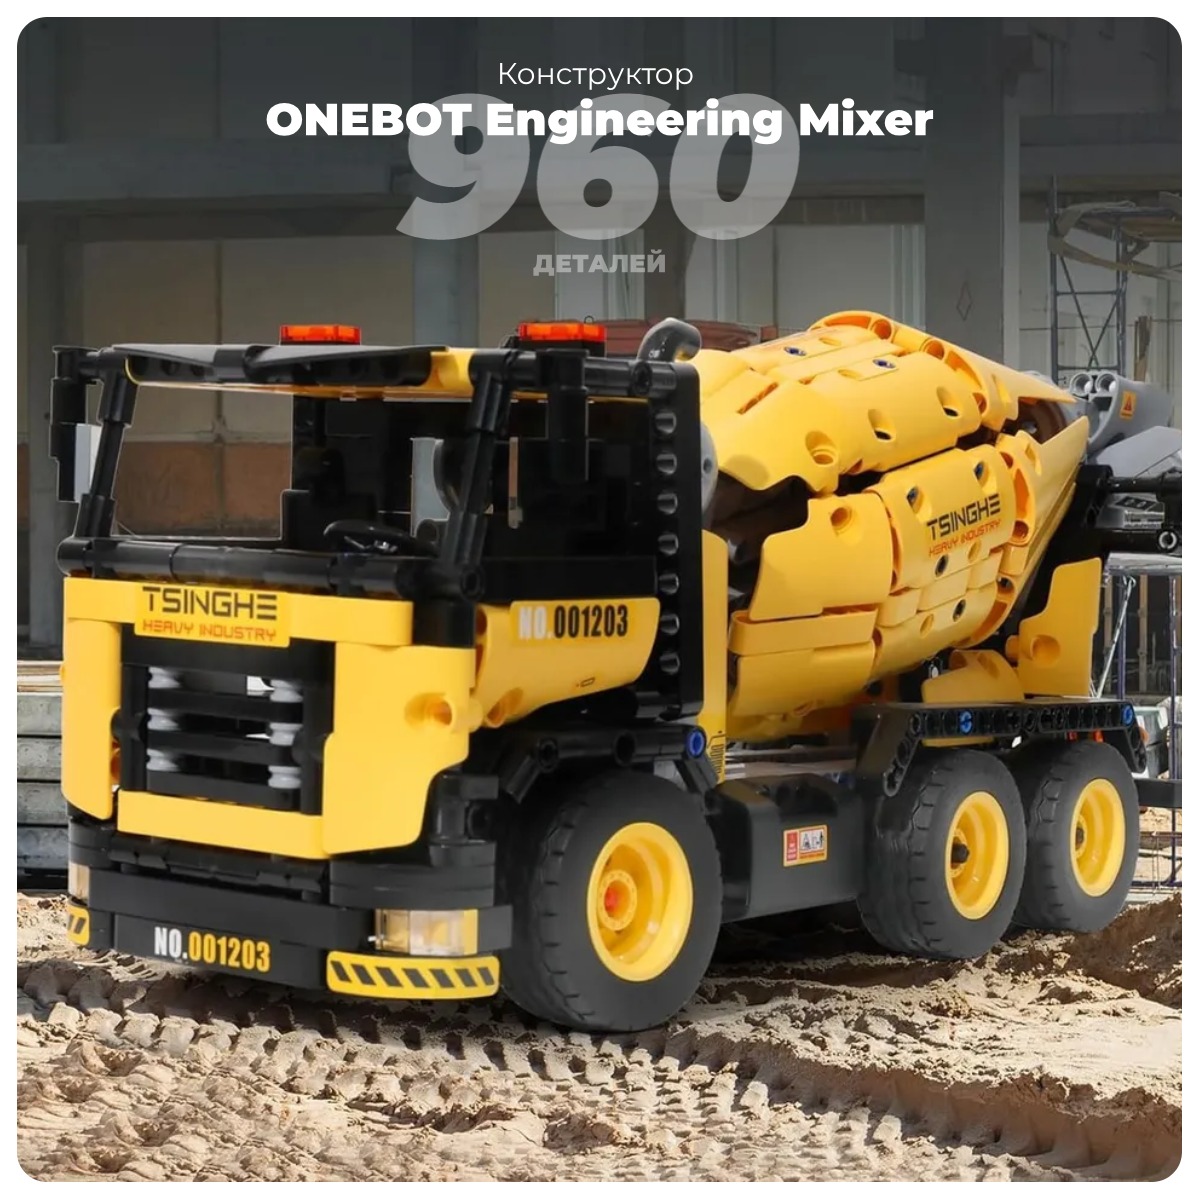 ONEBOT-Engineering-Mixer-OBJBC58AIQI-01